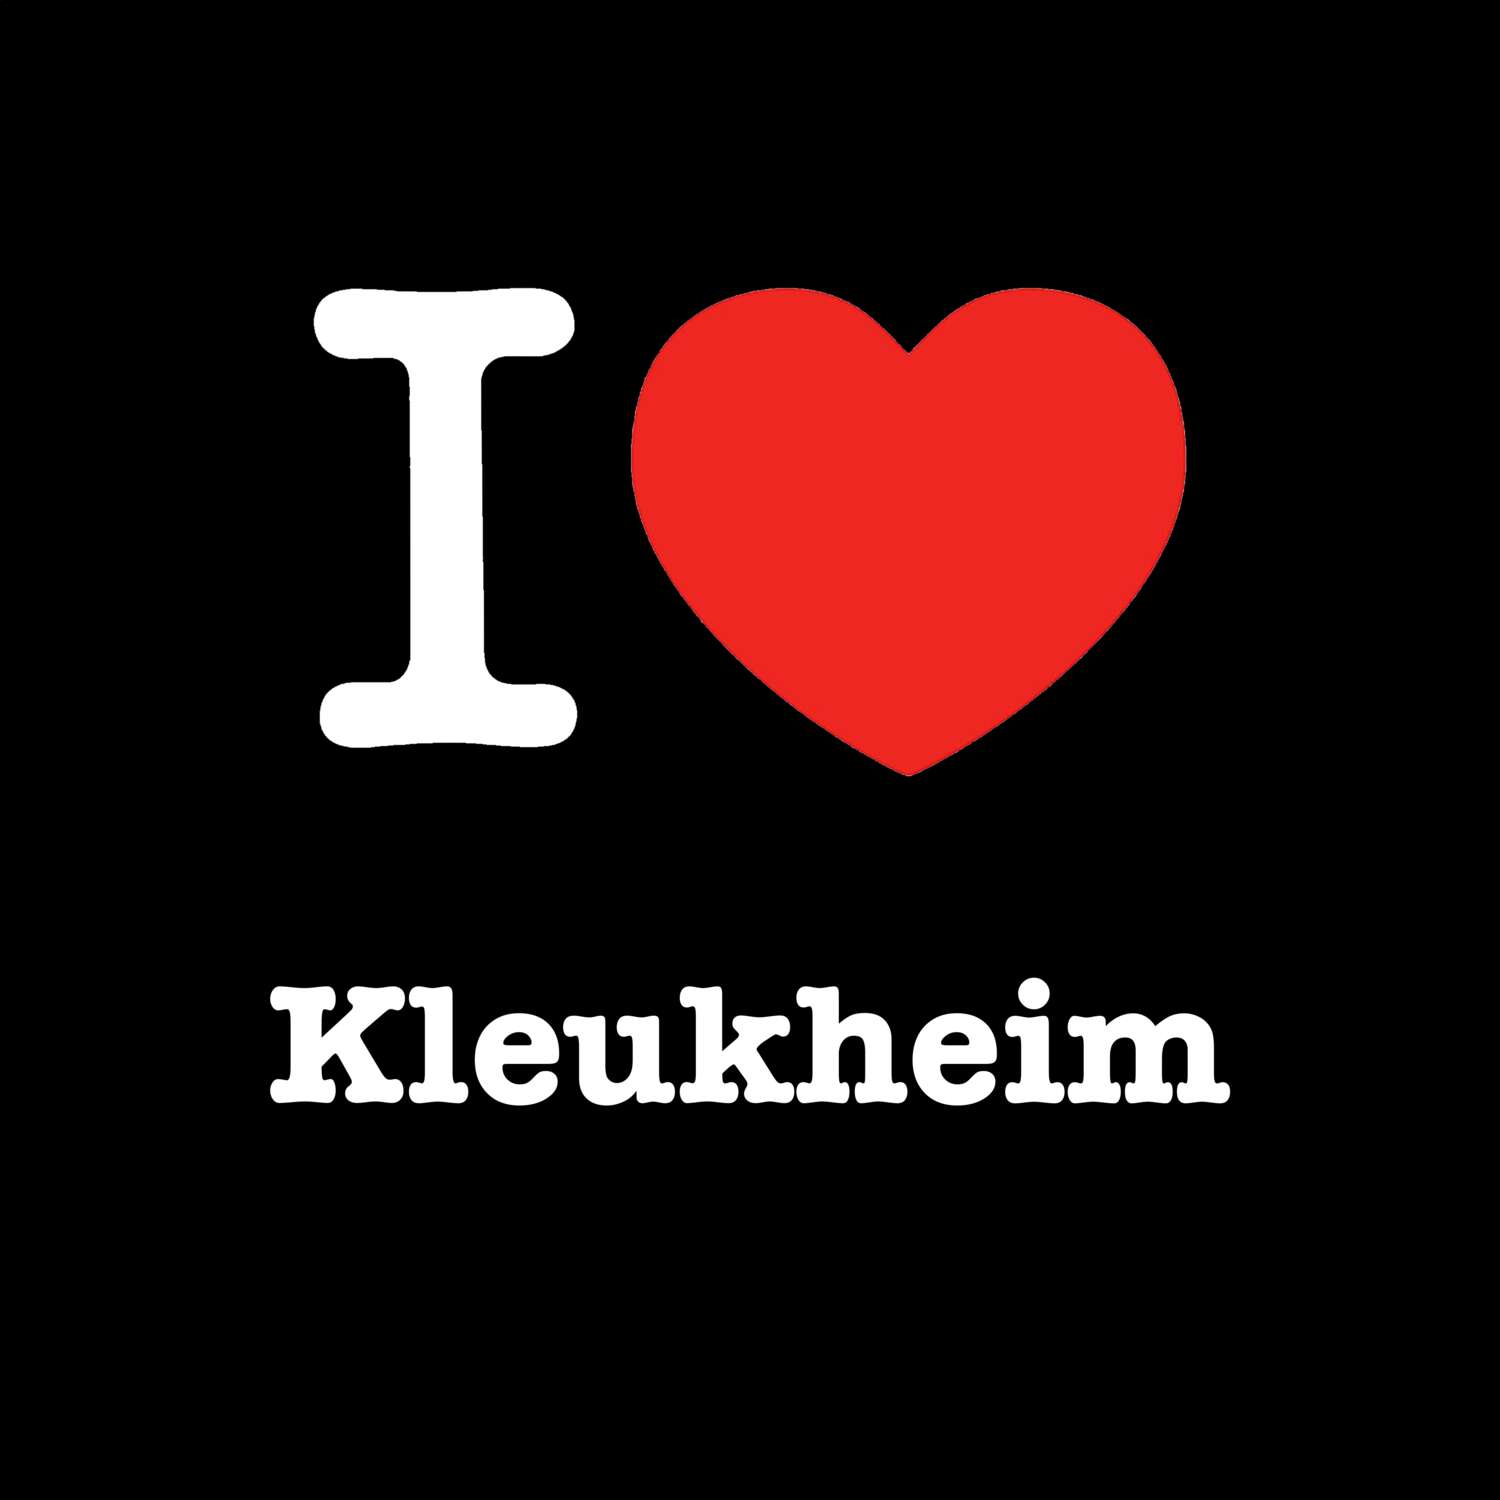 Kleukheim T-Shirt »I love«